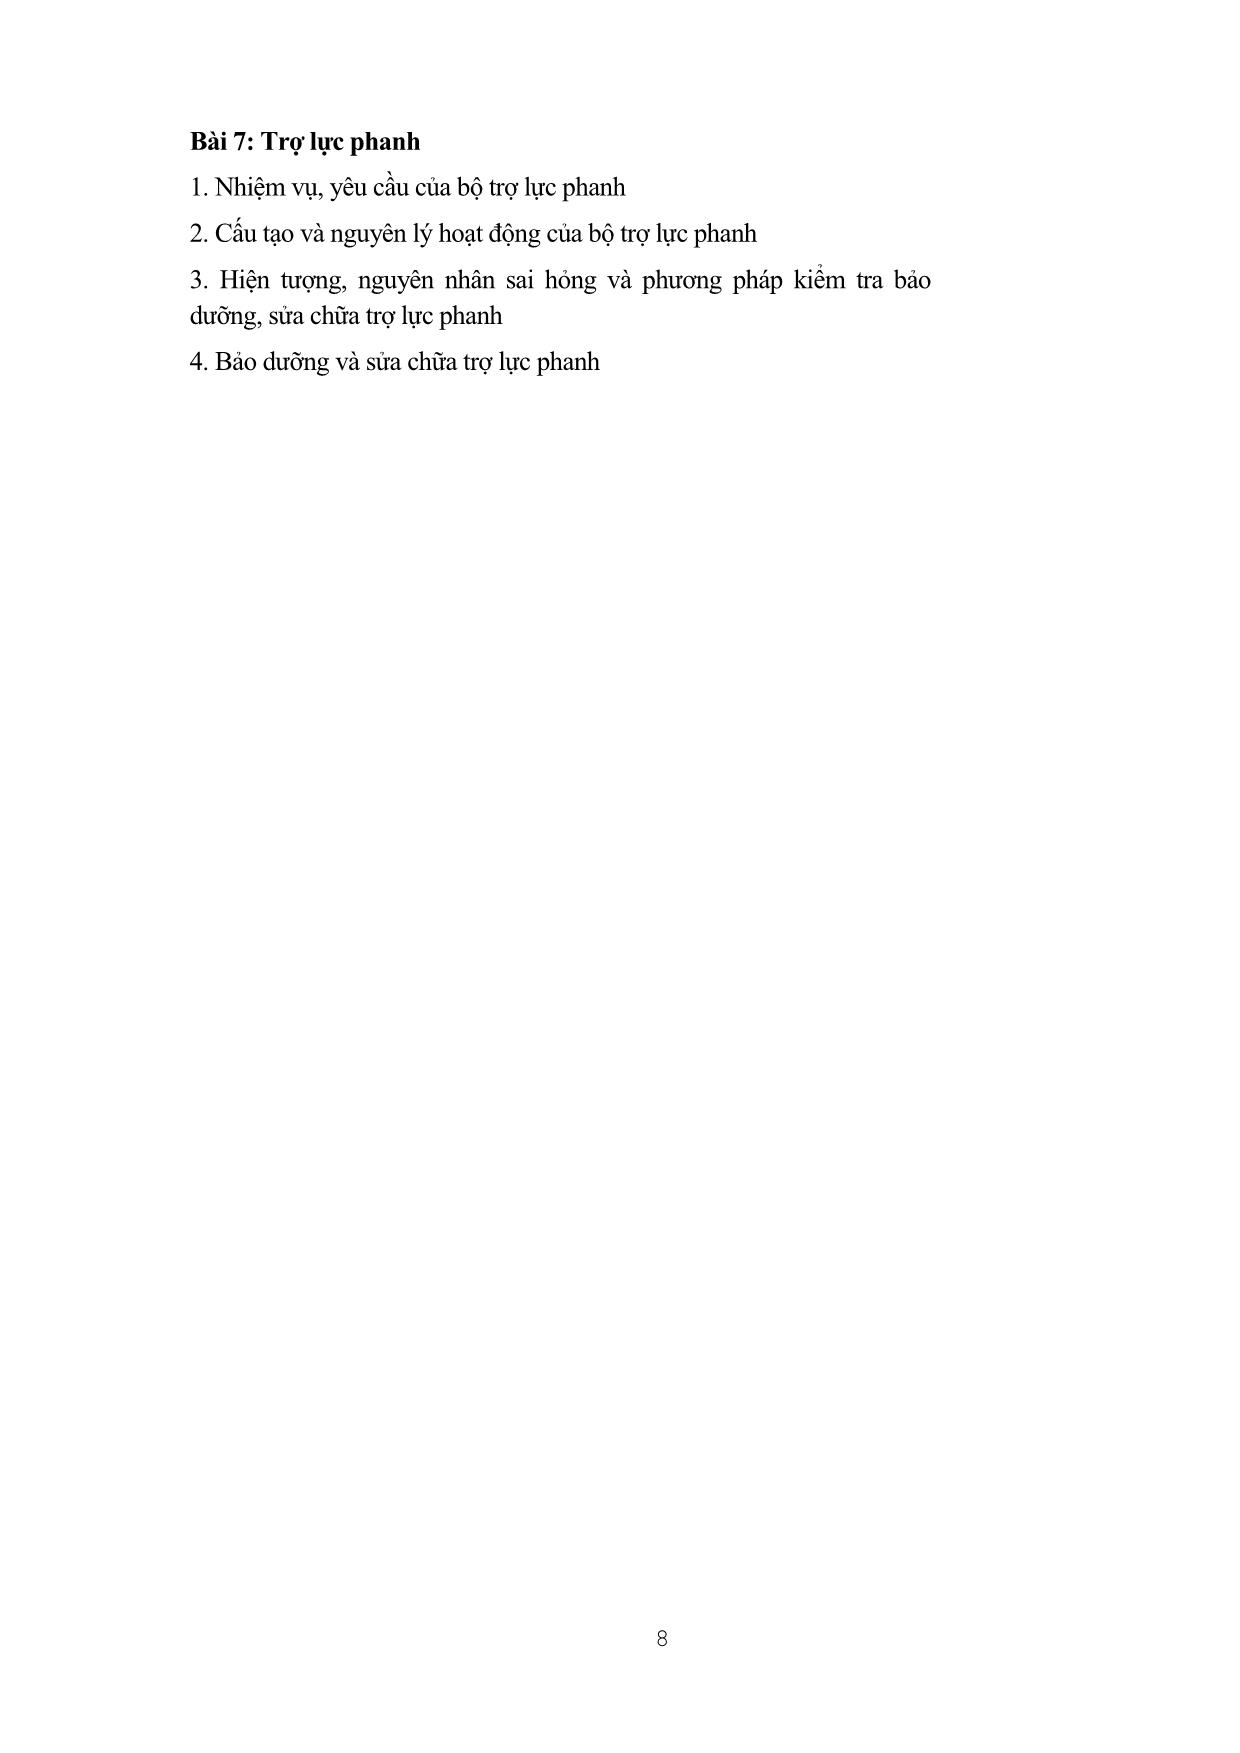 Giáo trình mô đun Bảo dưỡng và sửa chữa hệ thống phanh (Mới) trang 6